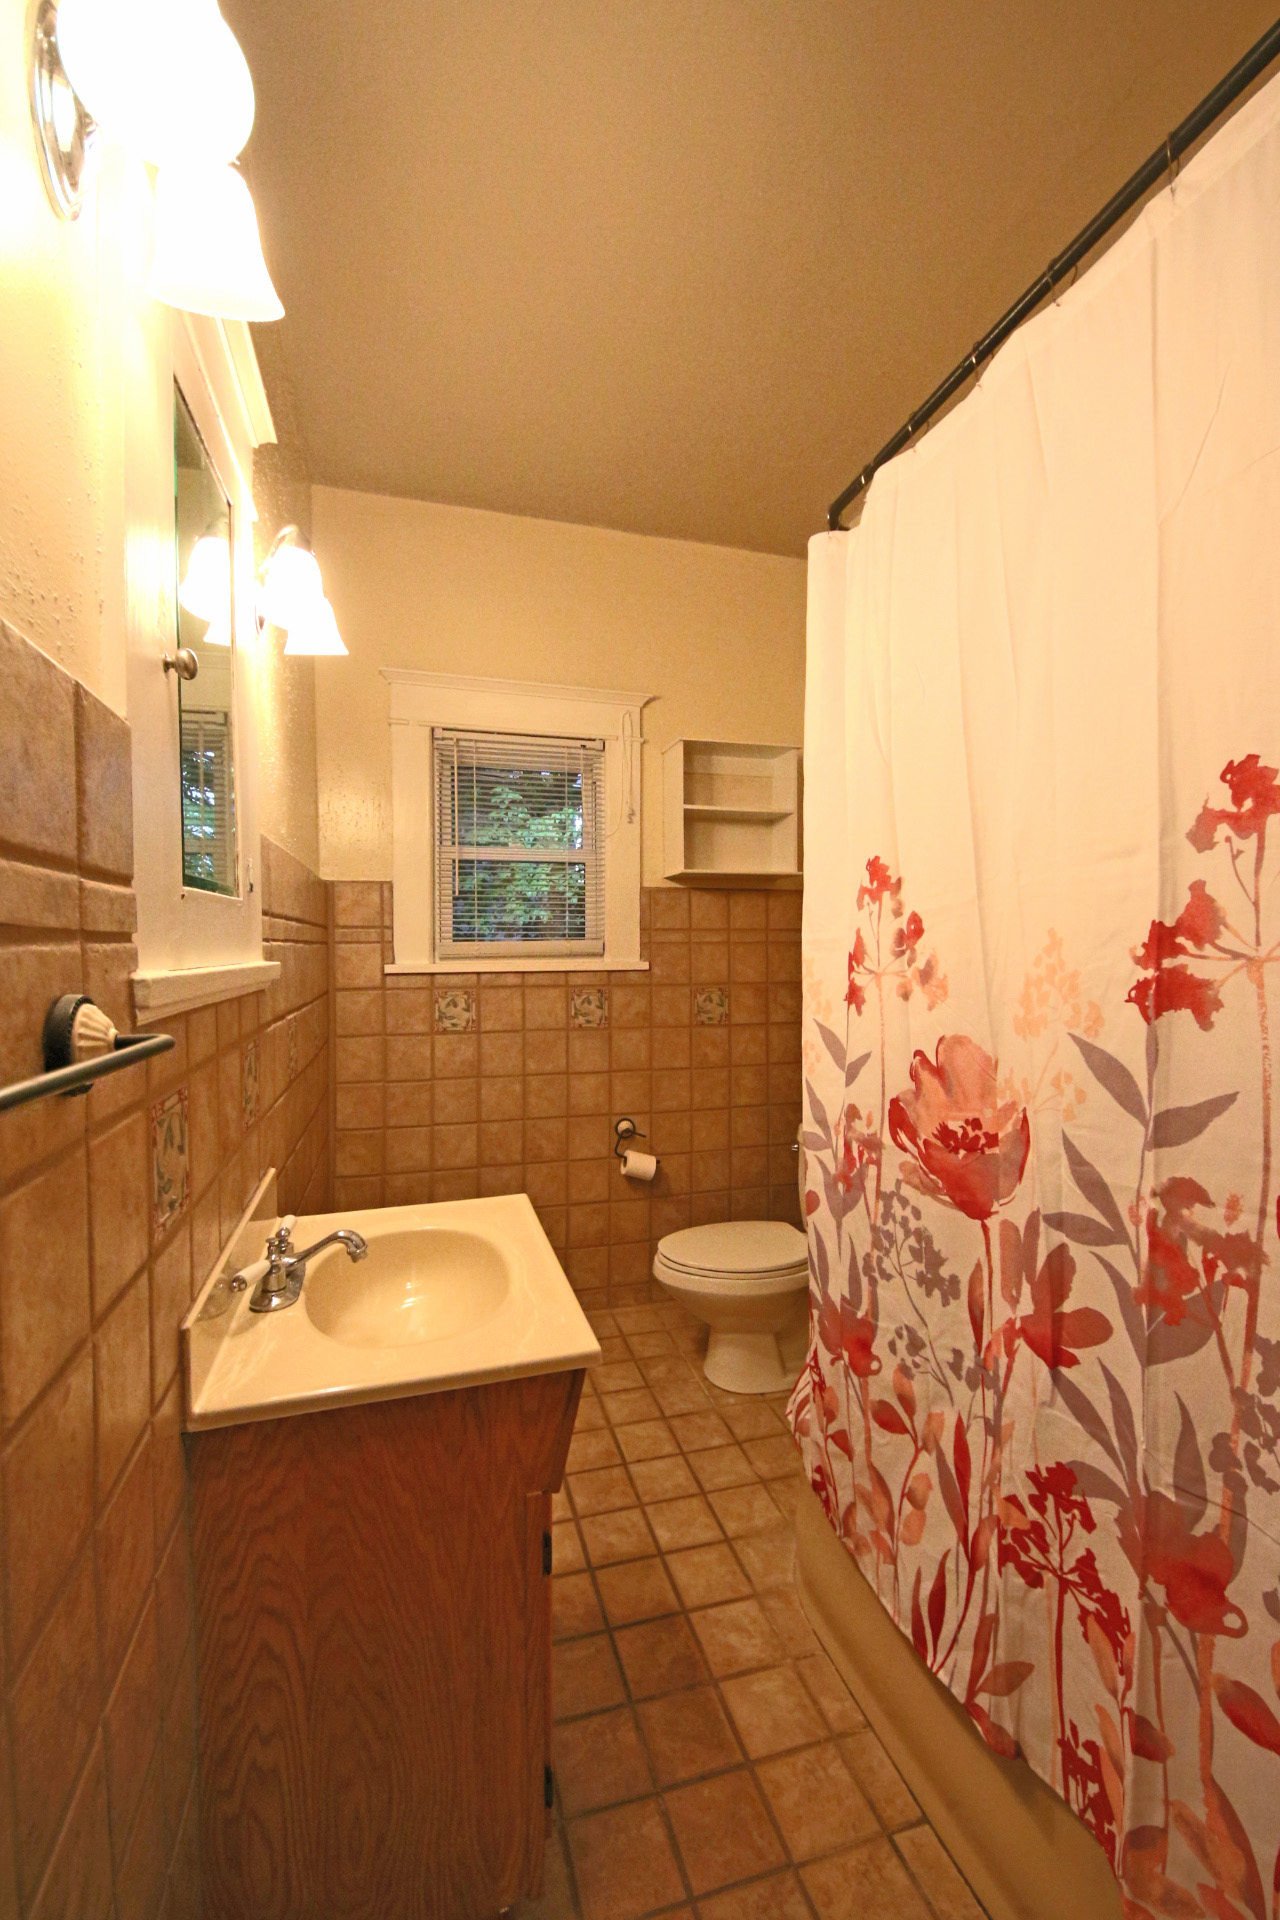 Bathroom with Curtain